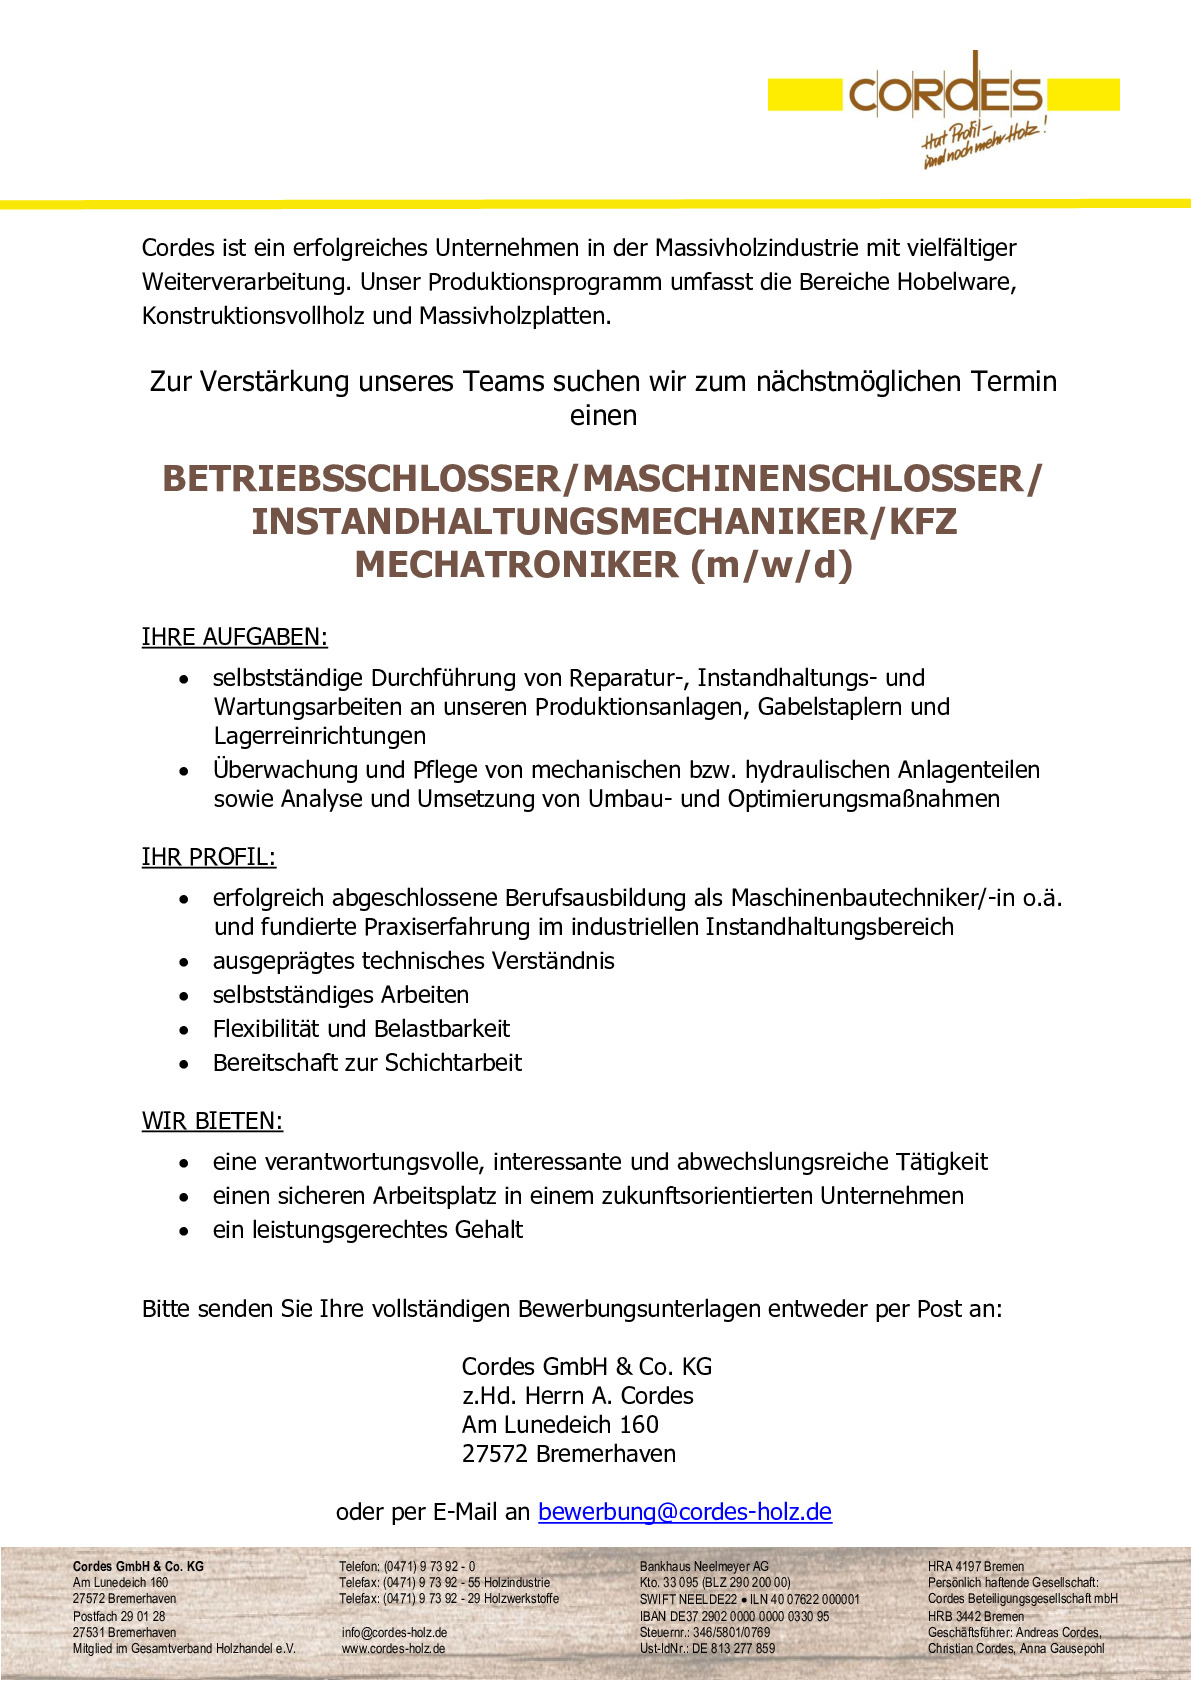 Betriebsschlosser/Gabelstaplermonteuer/Landmaschinenmechaniker (m/w/d)